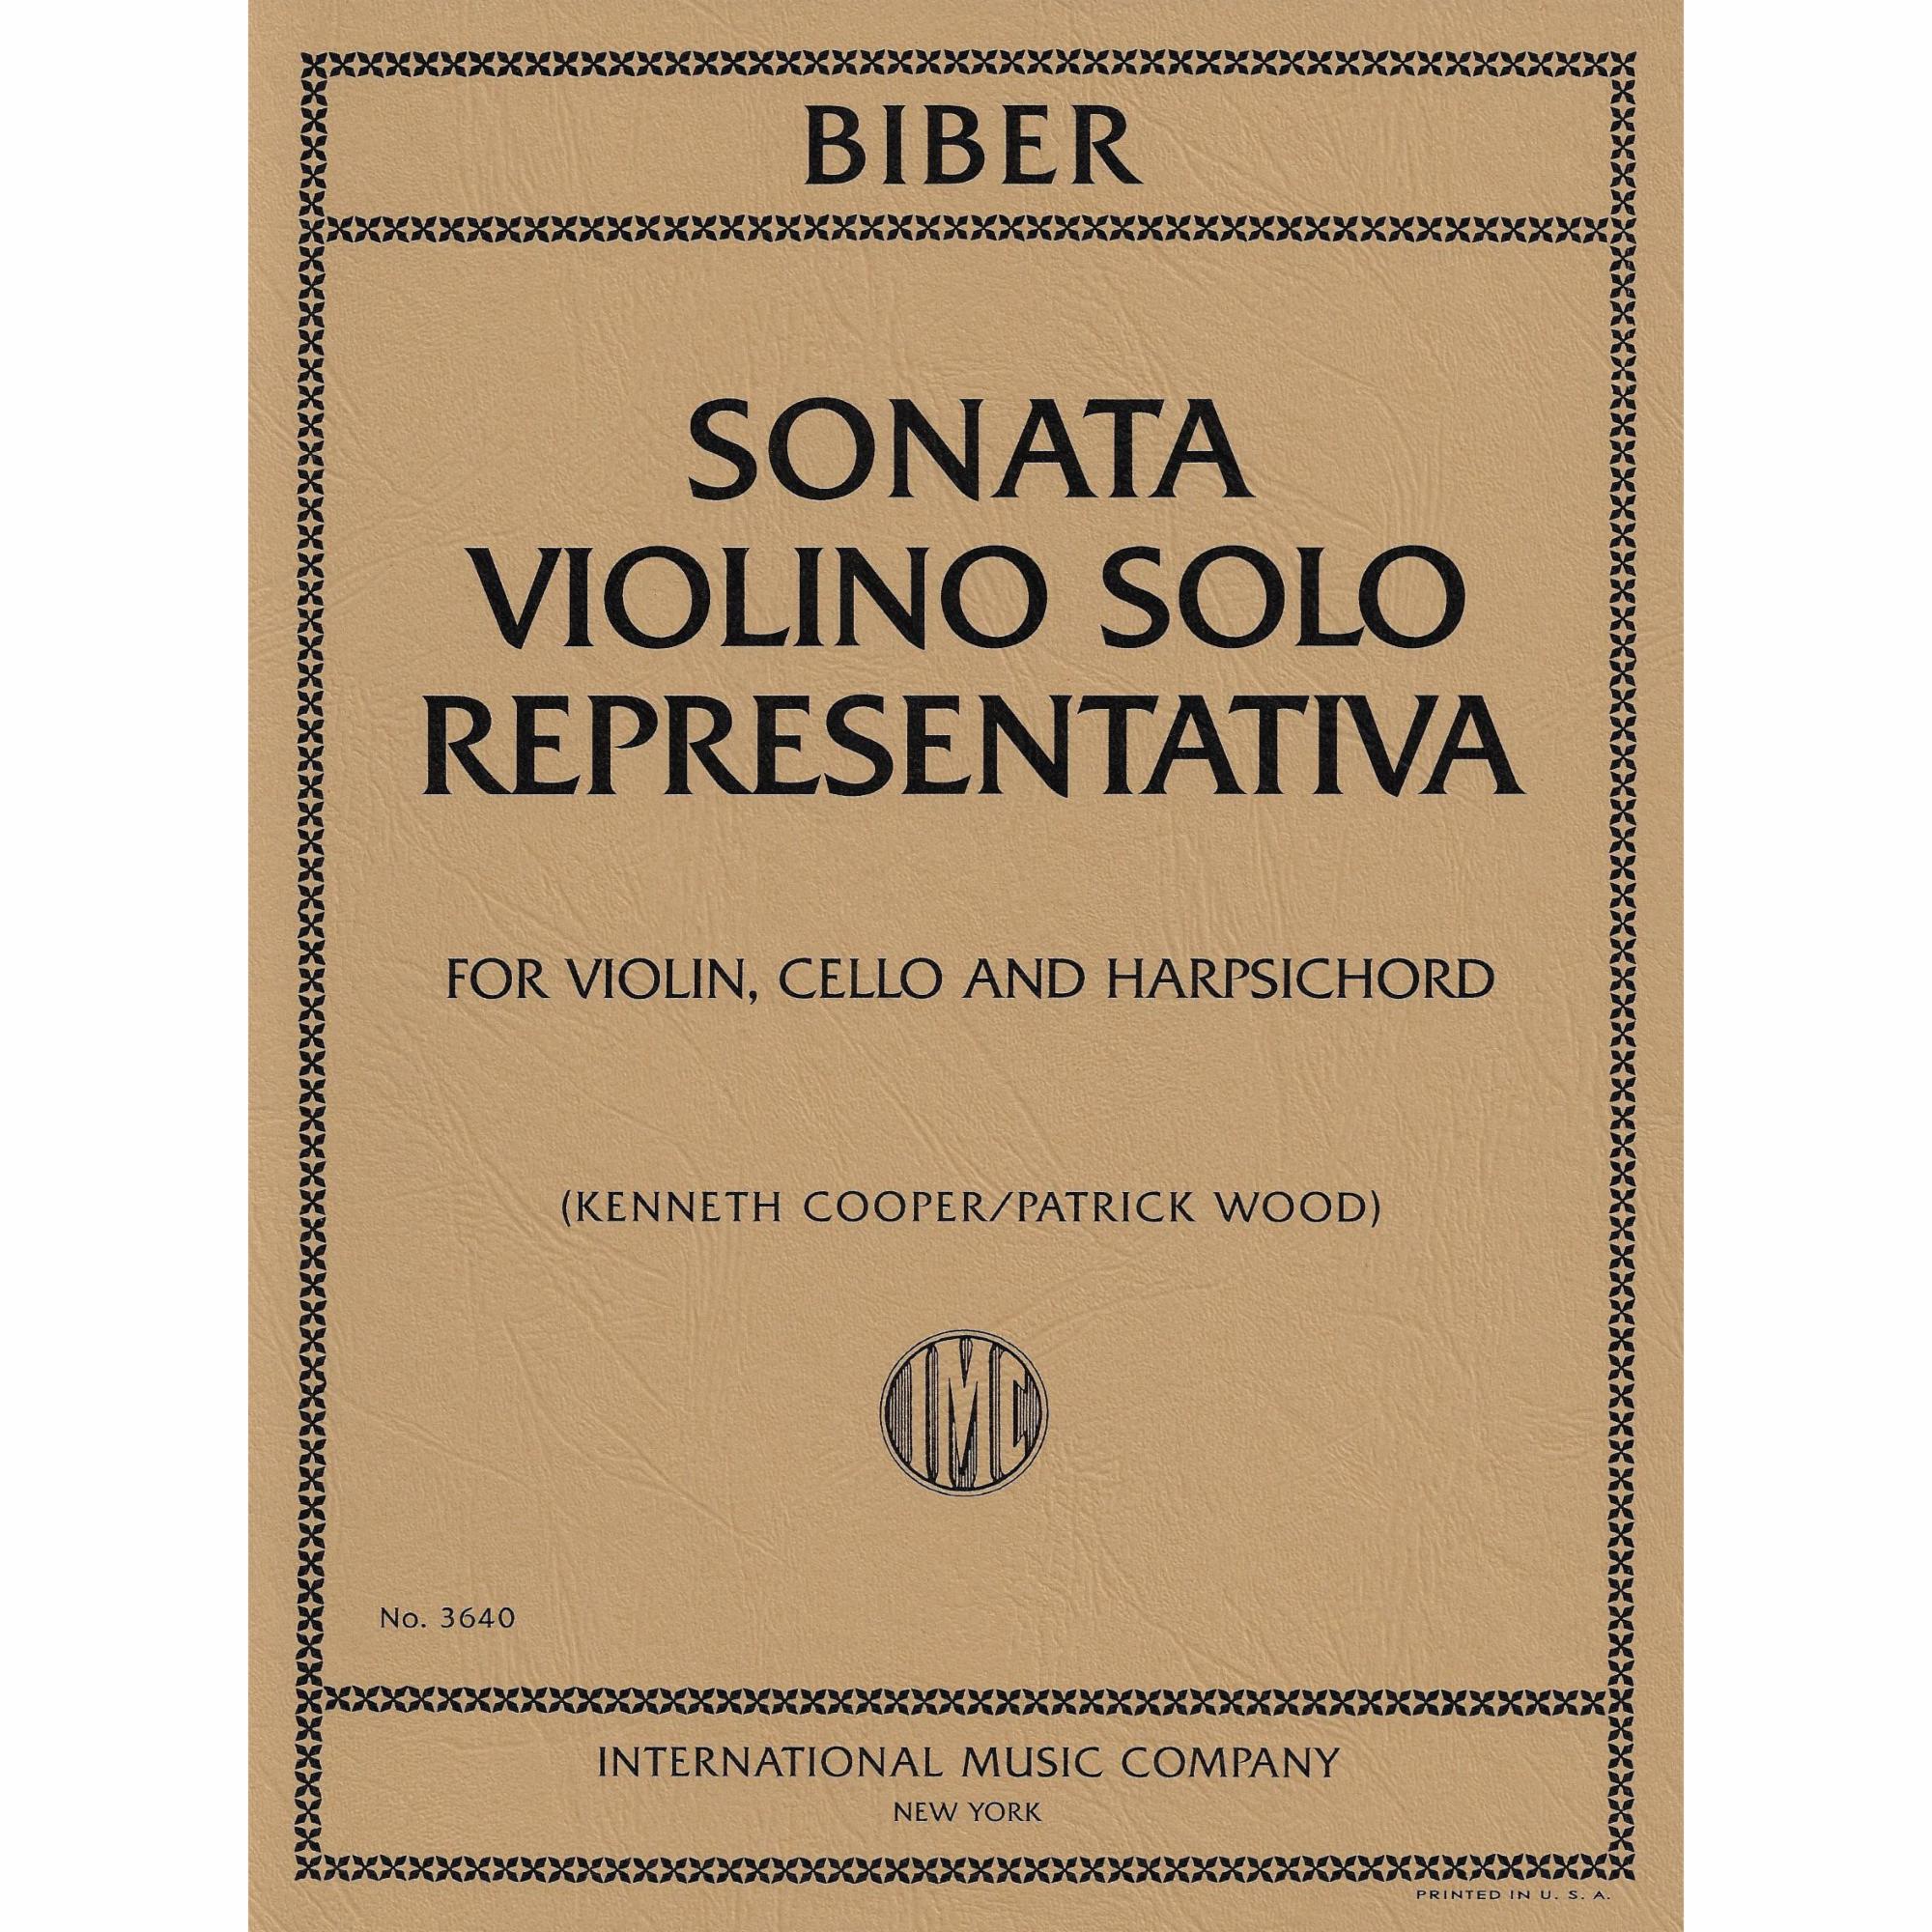 Biber -- Sonata Violino Solo Representativa for Violin and Basso Continuo